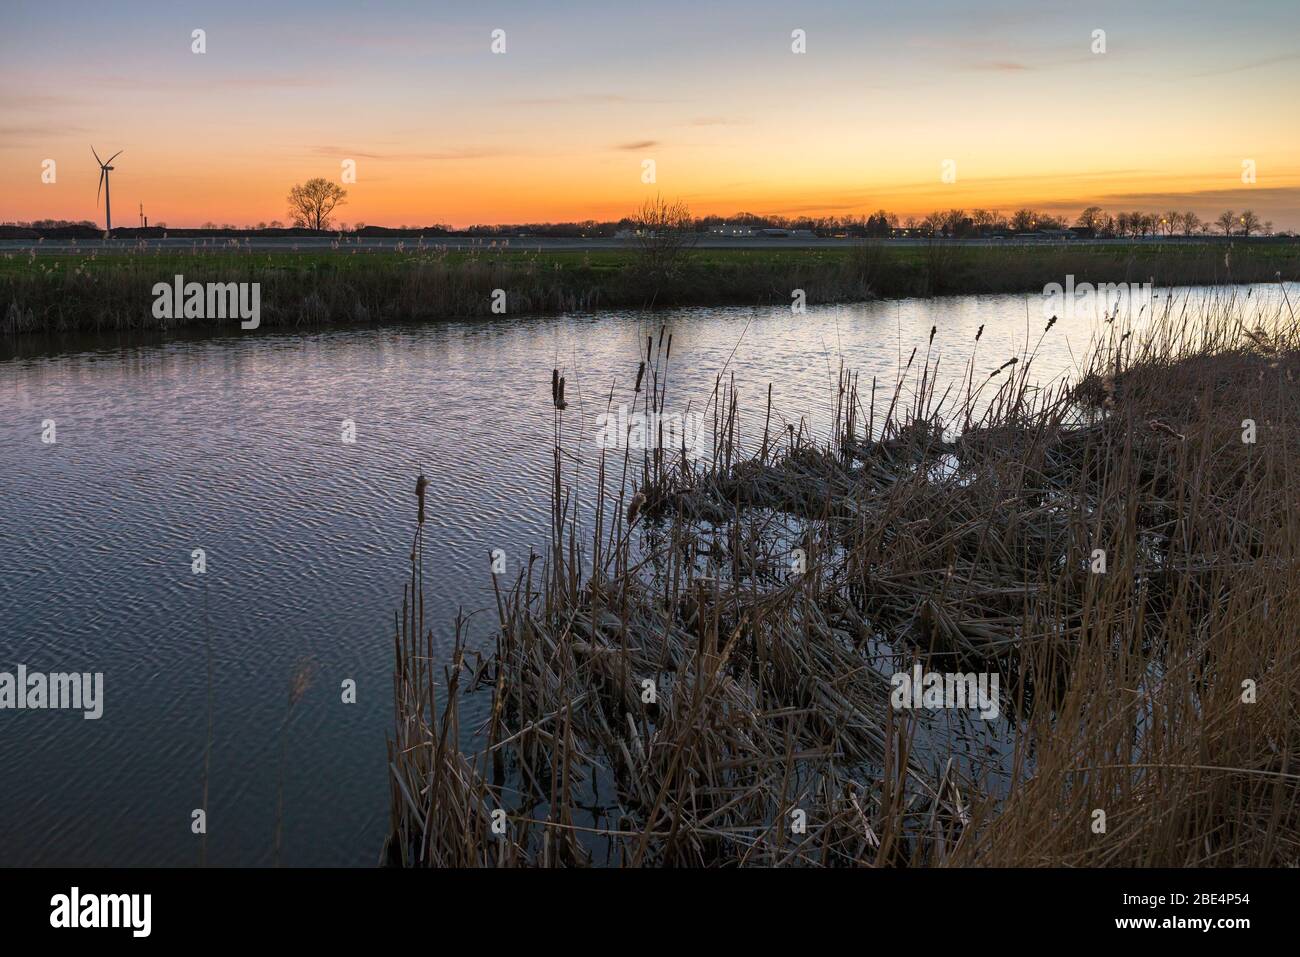 Paysage hollandais avec roseau le long de la rive d'une petite rivière. Couleurs crépuscule au-dessus de l'horizon. Banque D'Images